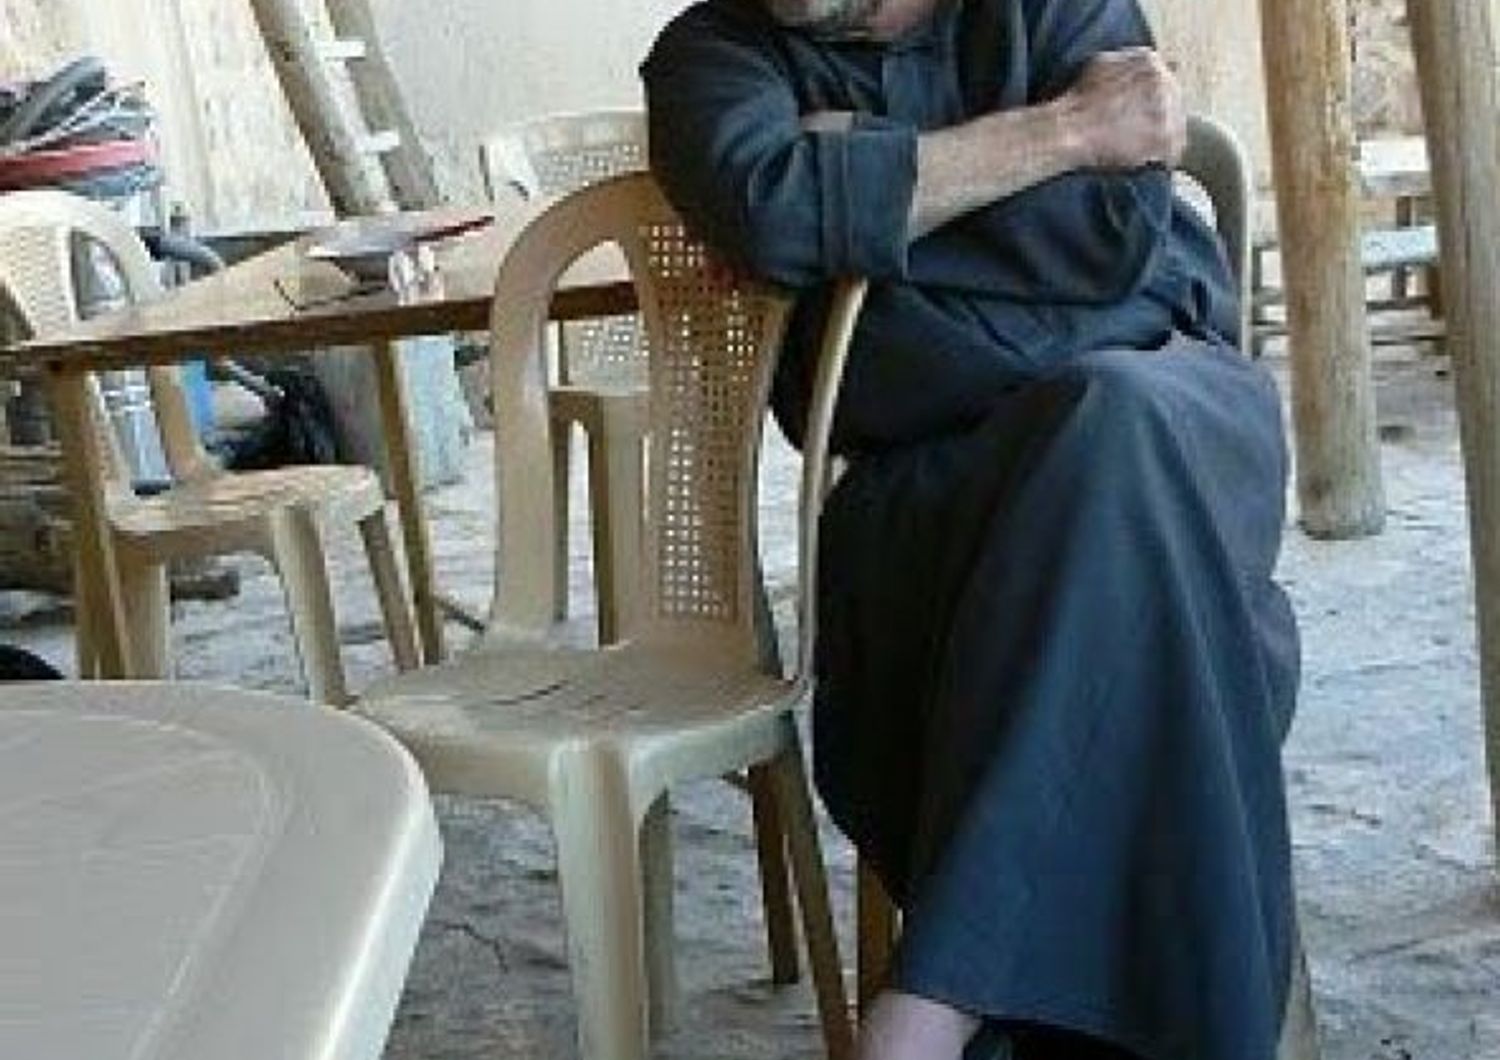 &nbsp; padre Paolo dall'Oglio rapito prigioniero in Libia